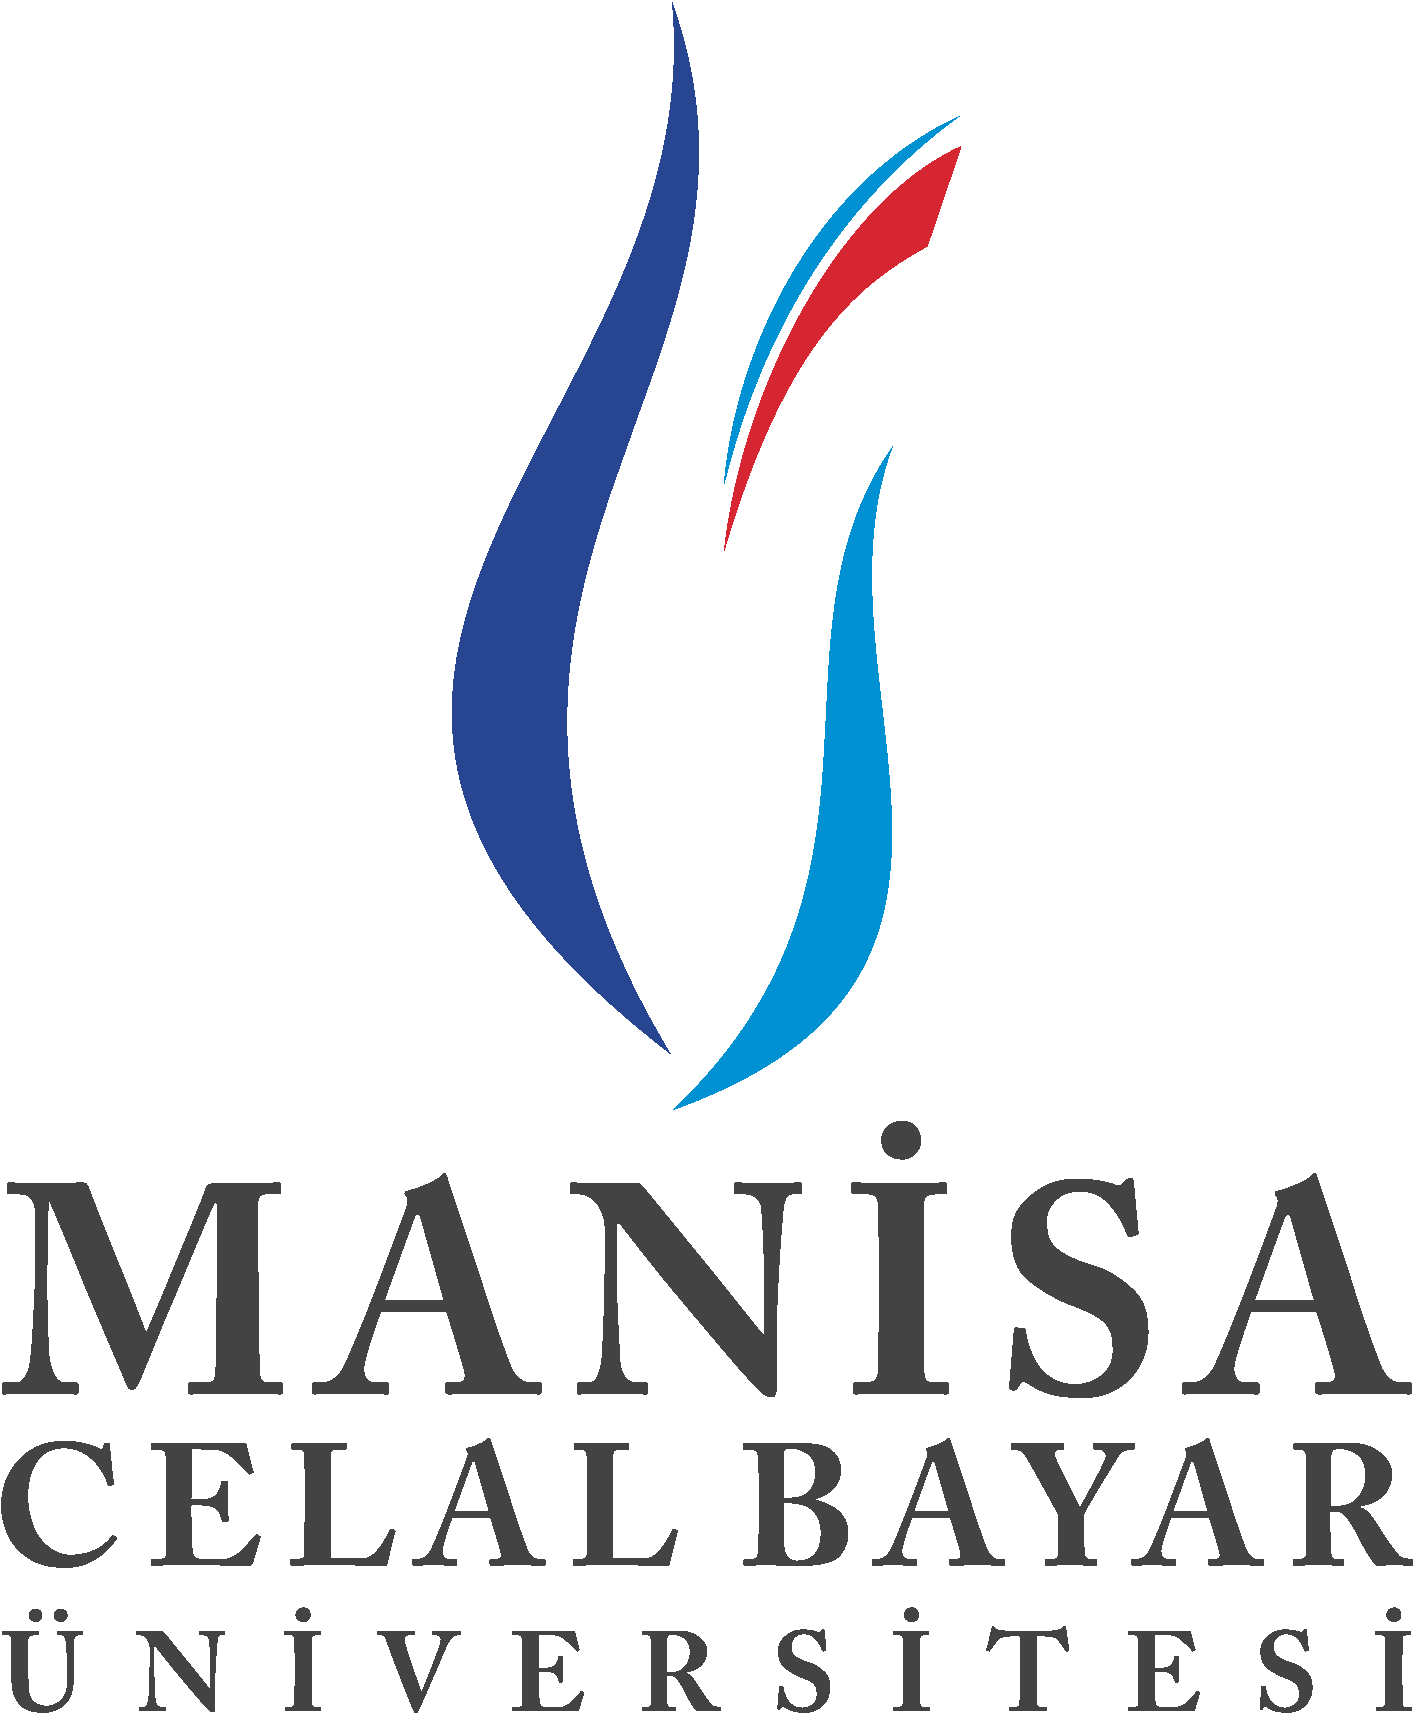 Manisa Celâl Bayar Üniversitesi